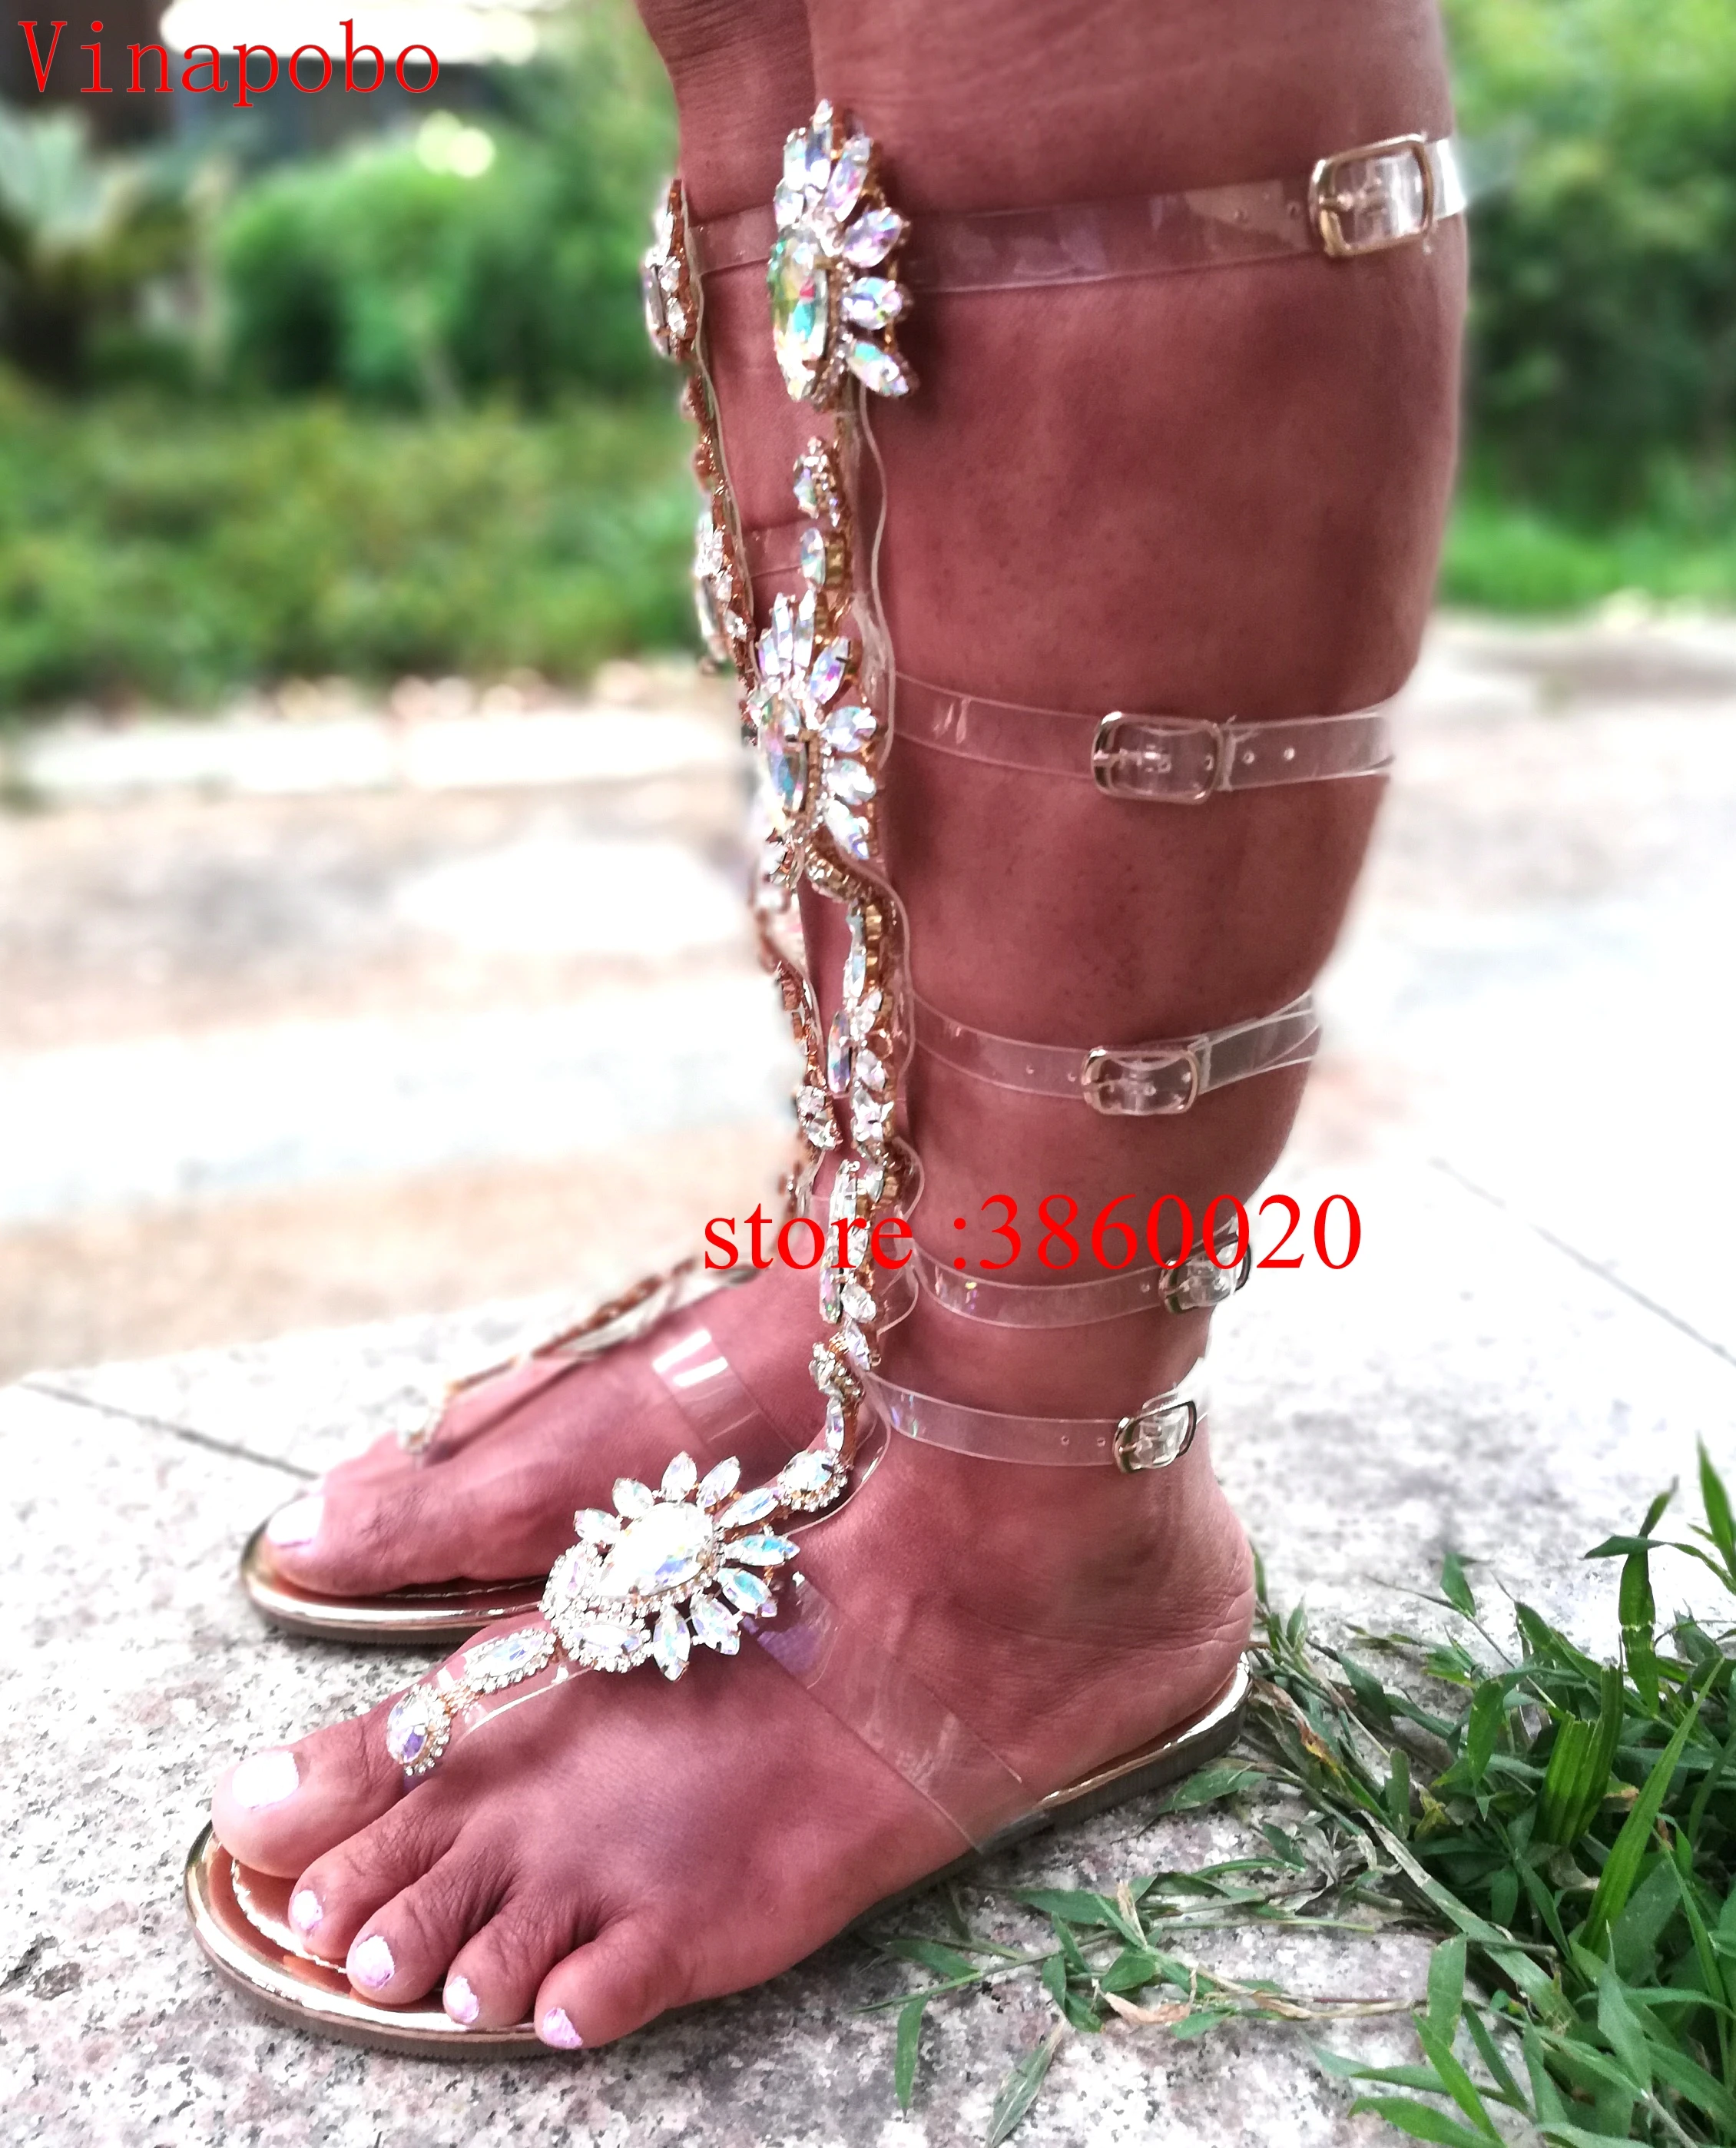 Женские сандалии-гладиаторы Vinapobo золотистые повседневные сандалии на плоской